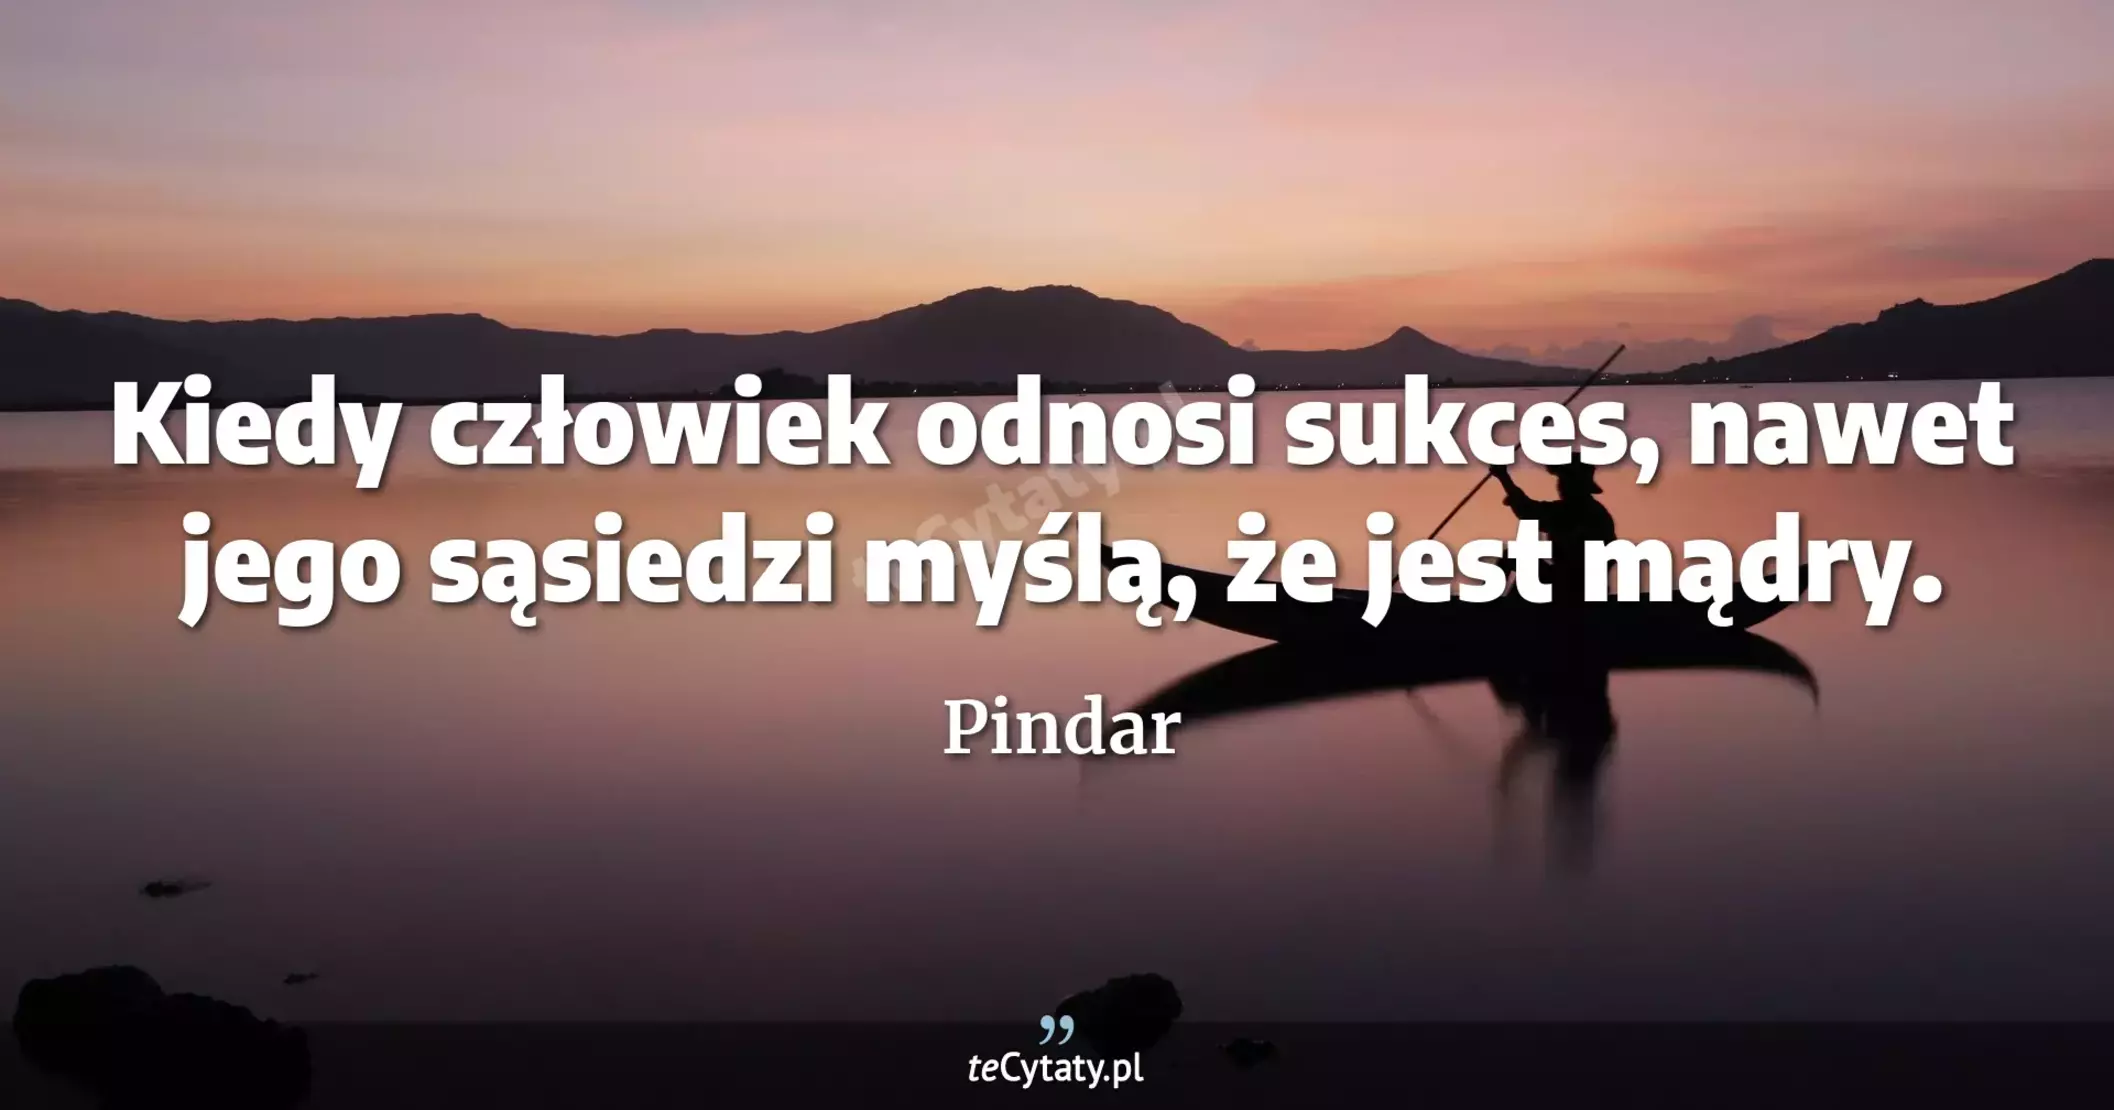 Kiedy człowiek odnosi sukces, nawet jego sąsiedzi myślą, że jest mądry. - Pindar